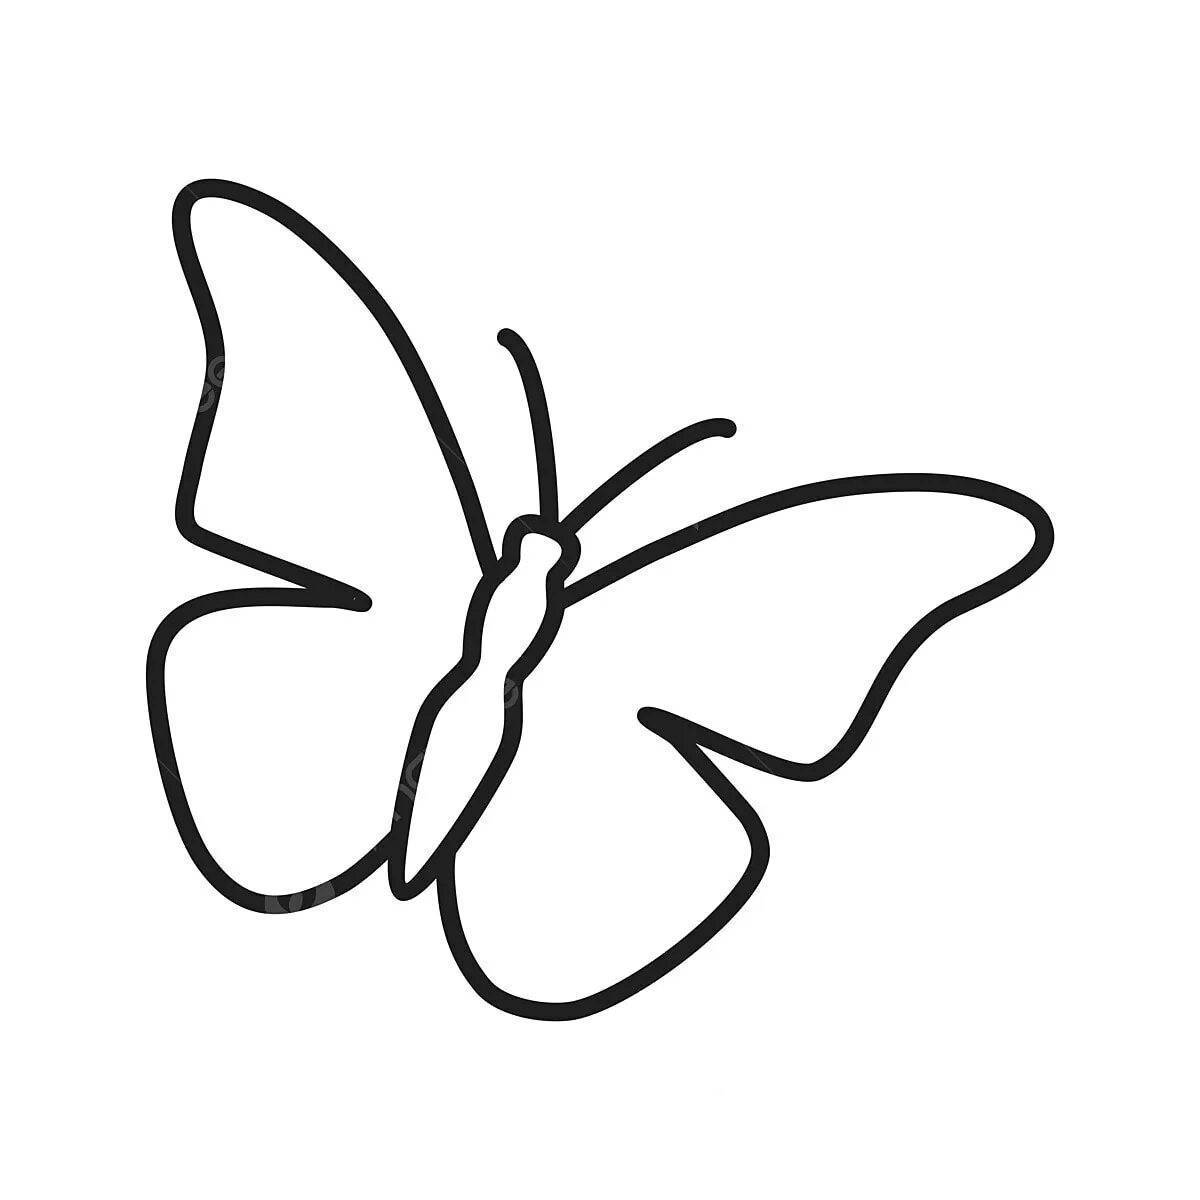 Картинка без контура. Бабочка контур. Бабочка очертание. Бабочка контур на белом фоне. Контур бабочки на прозрачном фоне.